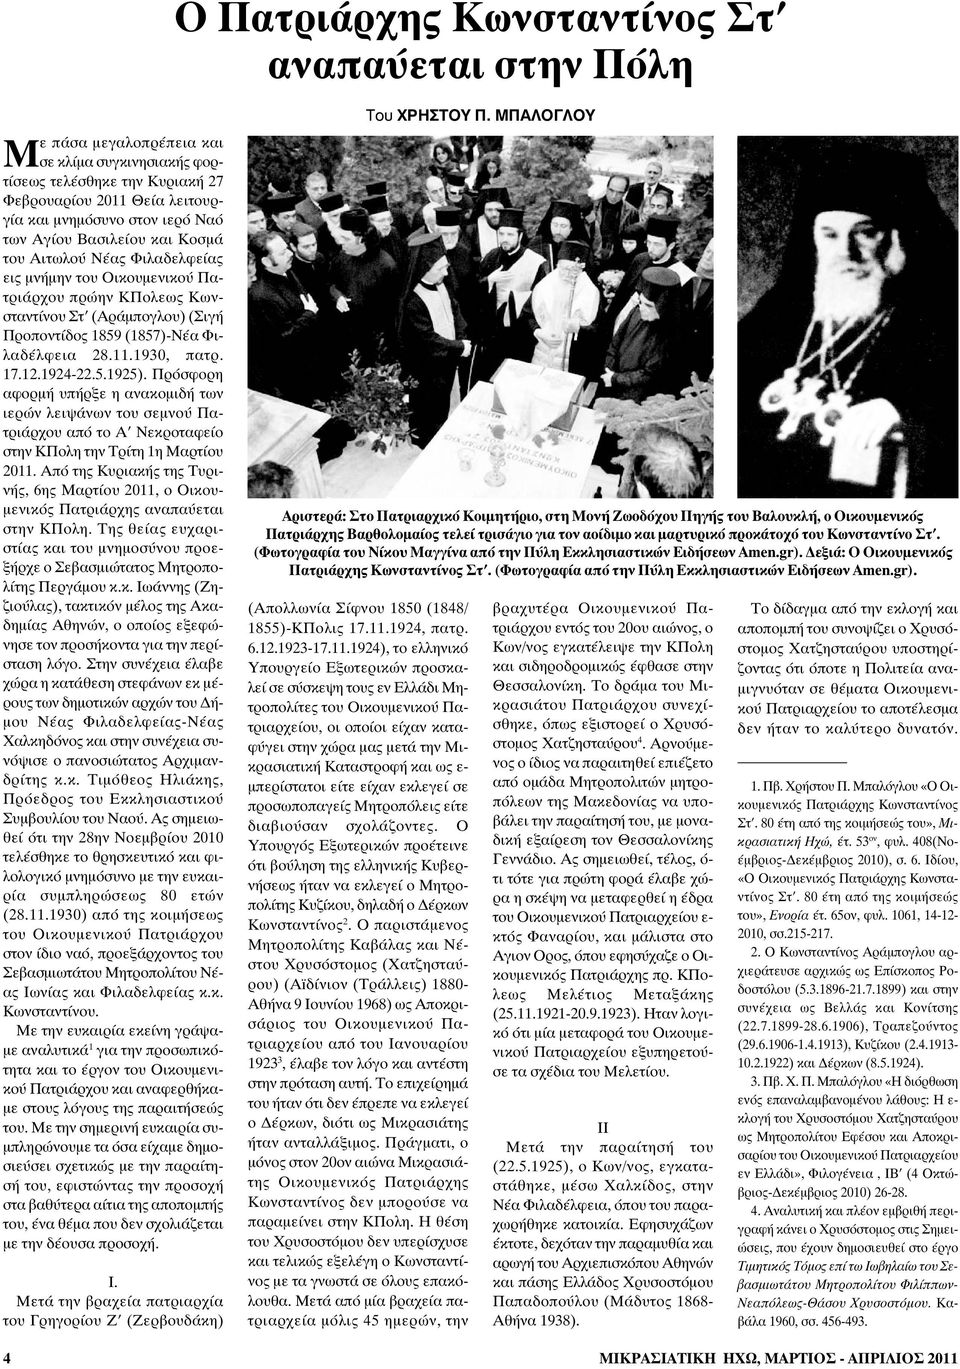 1930, πατρ. 17.12.1924-22.5.1925). Πρόσφορη αφορμή υπήρξε η ανακομιδή των ιερών λειψάνων του σεμνού Πατριάρχου από το Α Νεκροταφείο στην ΚΠολη την Τρίτη 1η Μαρτίου 2011.